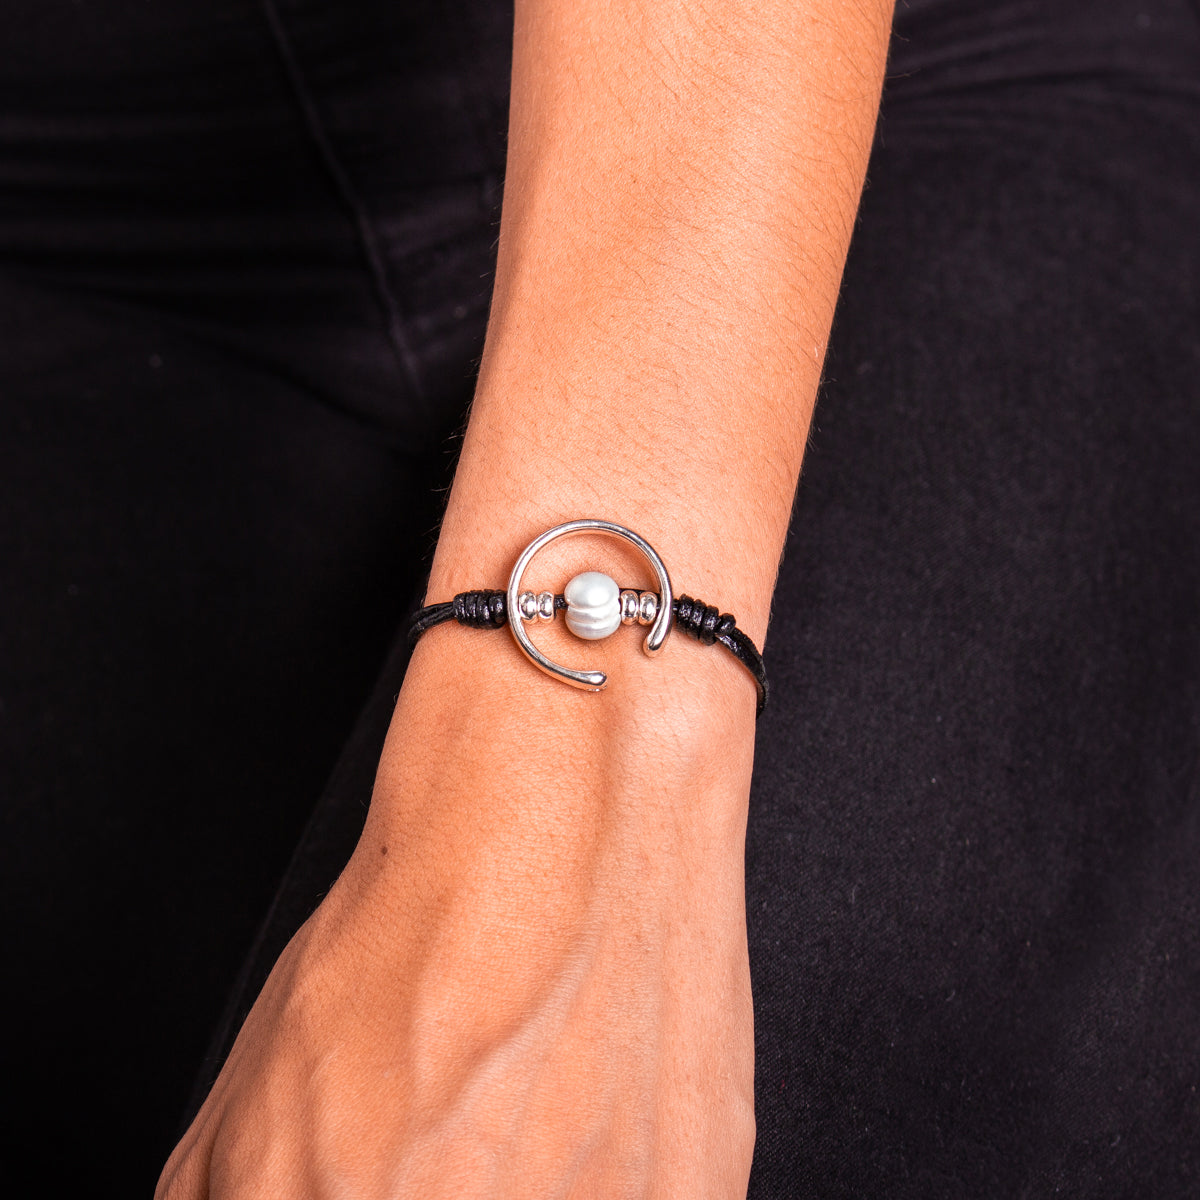 Genuine leather handmade women's bracelet MBR-15